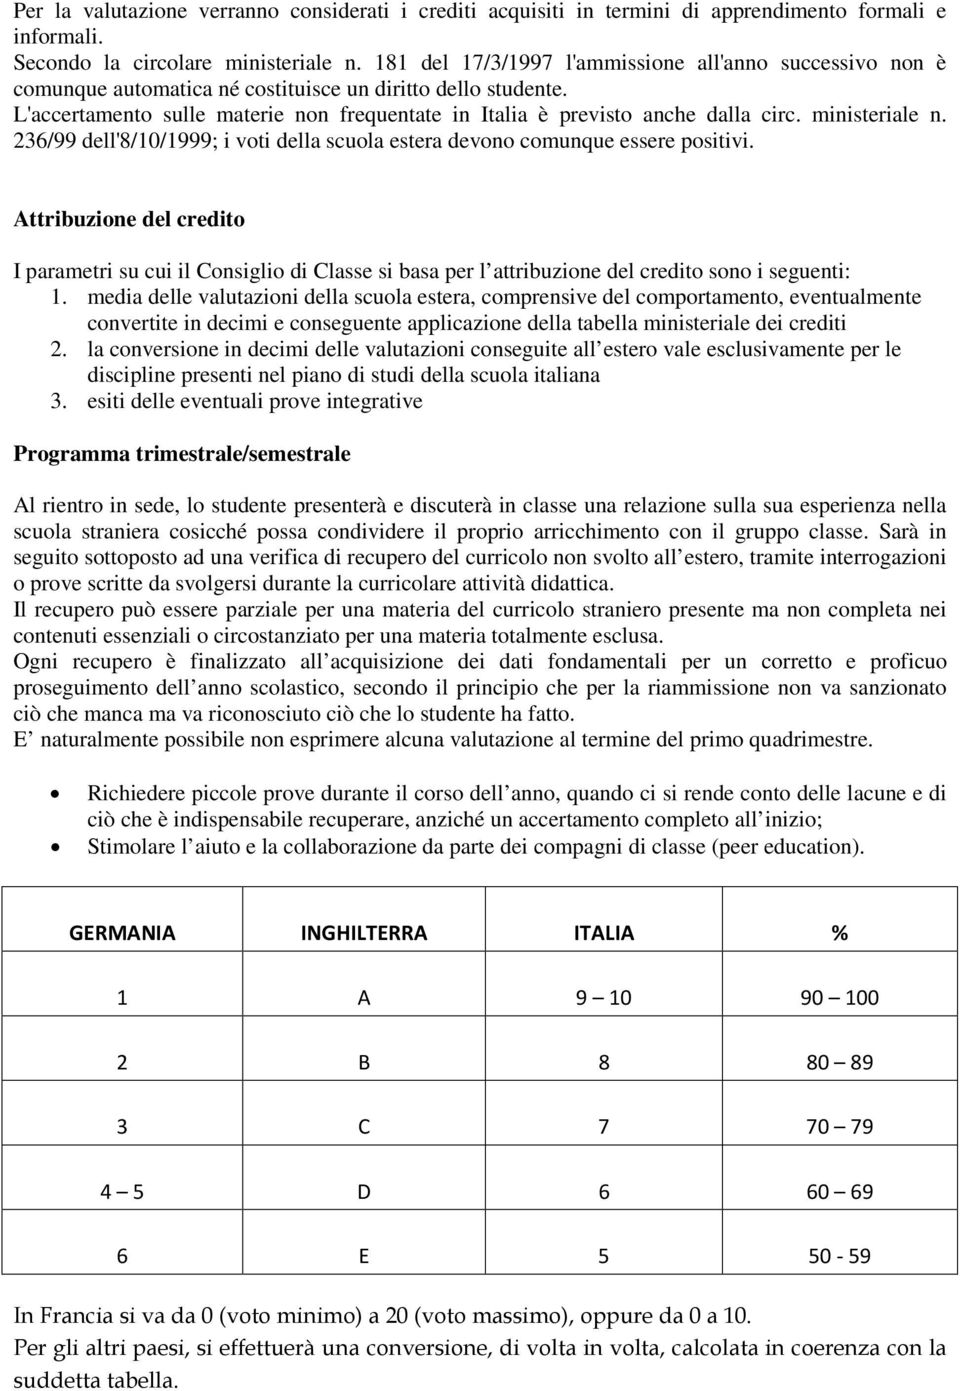 L'accertamento sulle materie non frequentate in Italia è previsto anche dalla circ. ministeriale n. 236/99 dell'8/10/1999; i voti della scuola estera devono comunque essere positivi.